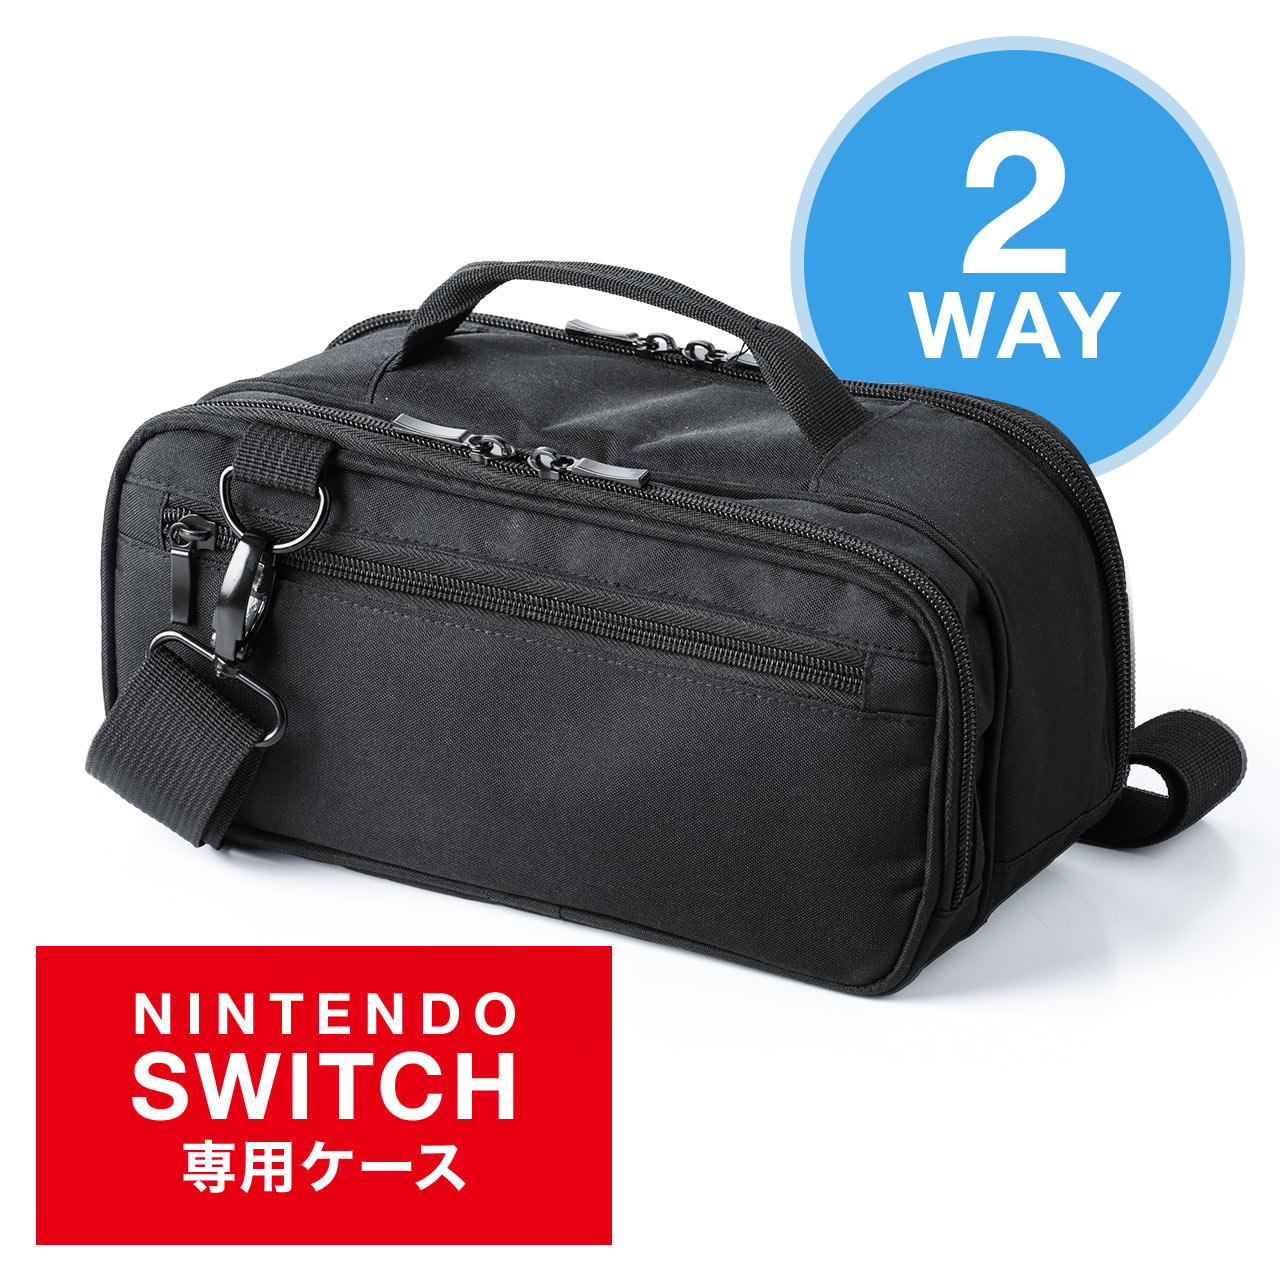 Nintendo Switch用収納バッグ Nintendo Switch ショルダーバッグ ハンドバッグ ダブルルーム フロントポケット 起毛素材 ダブルファスナー 0 Nsw007bkの販売商品 通販ならサンワダイレクト